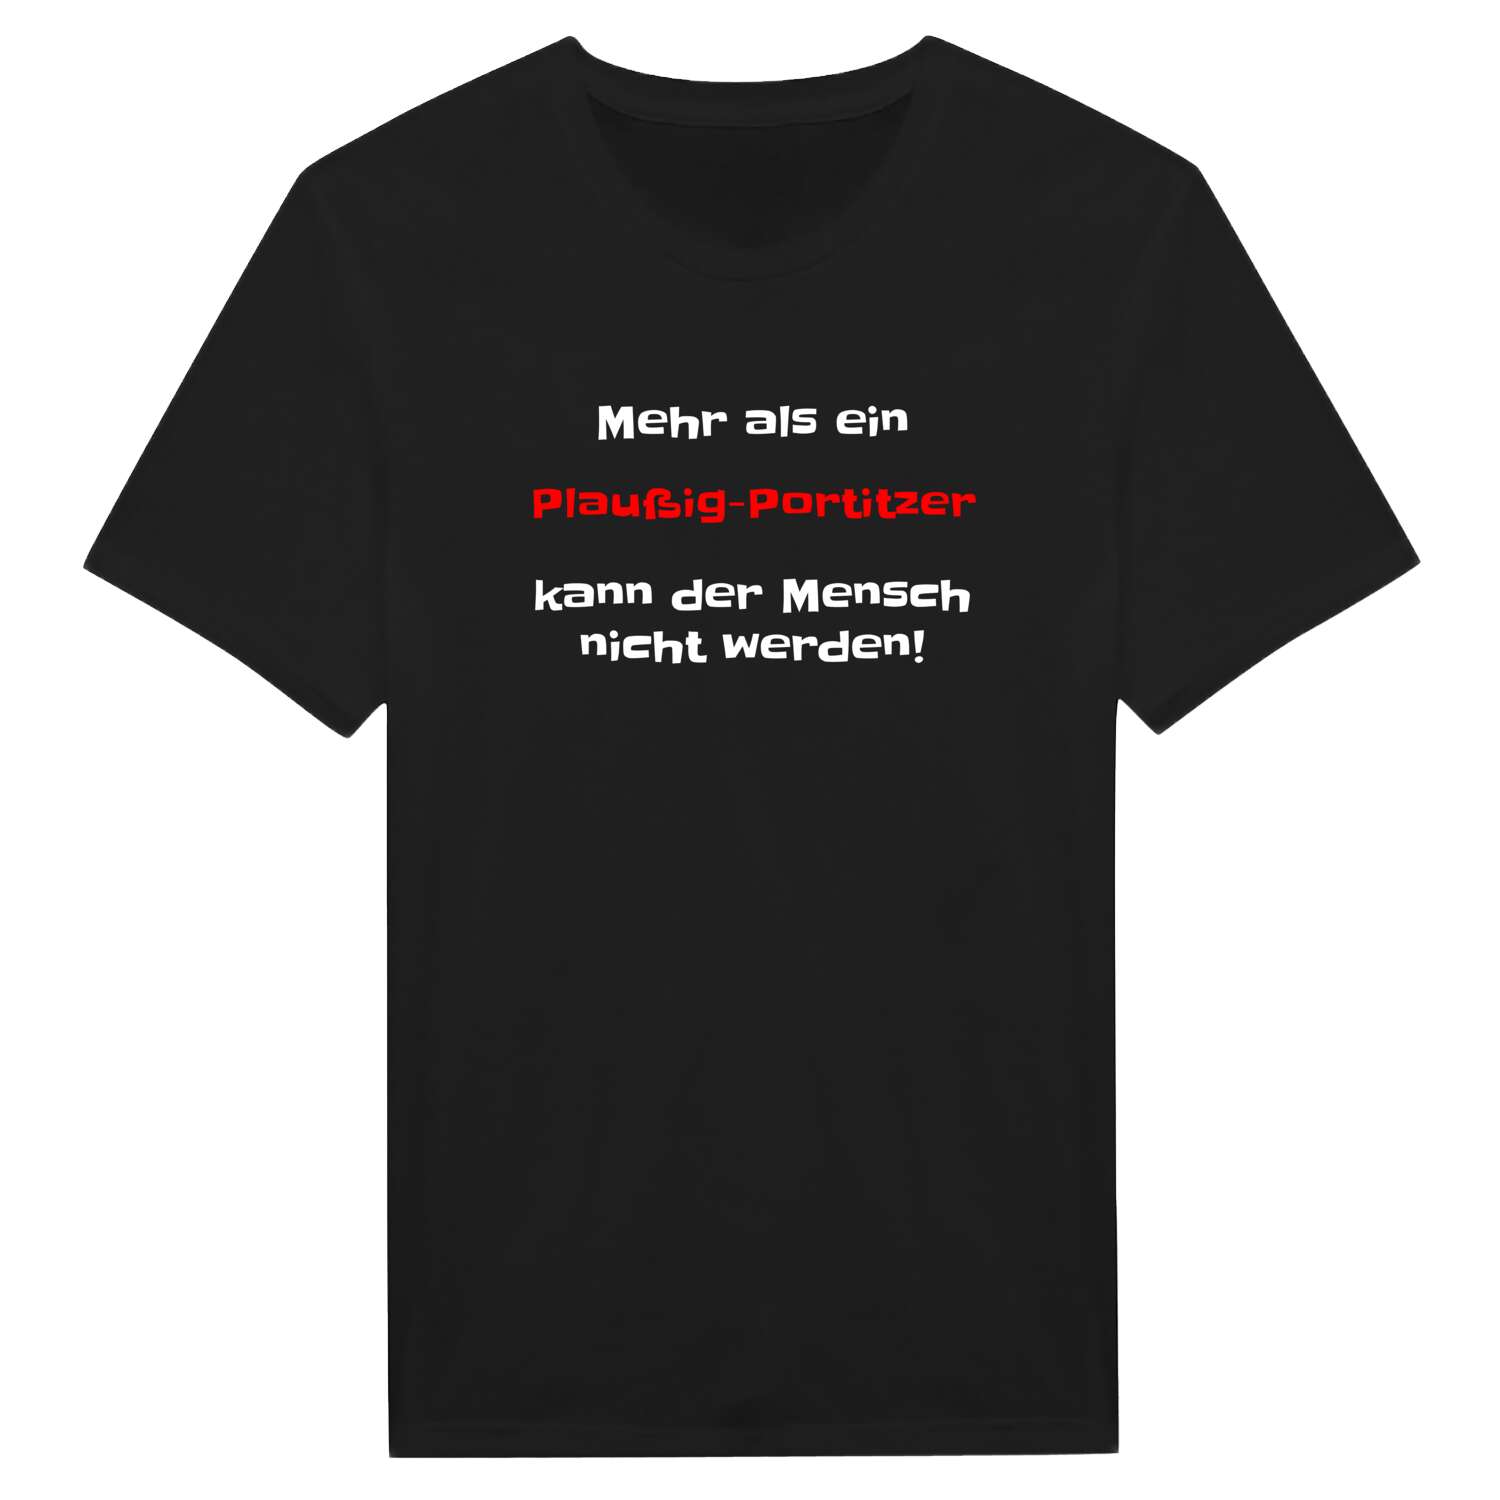 Plaußig-Portitz T-Shirt »Mehr als ein«